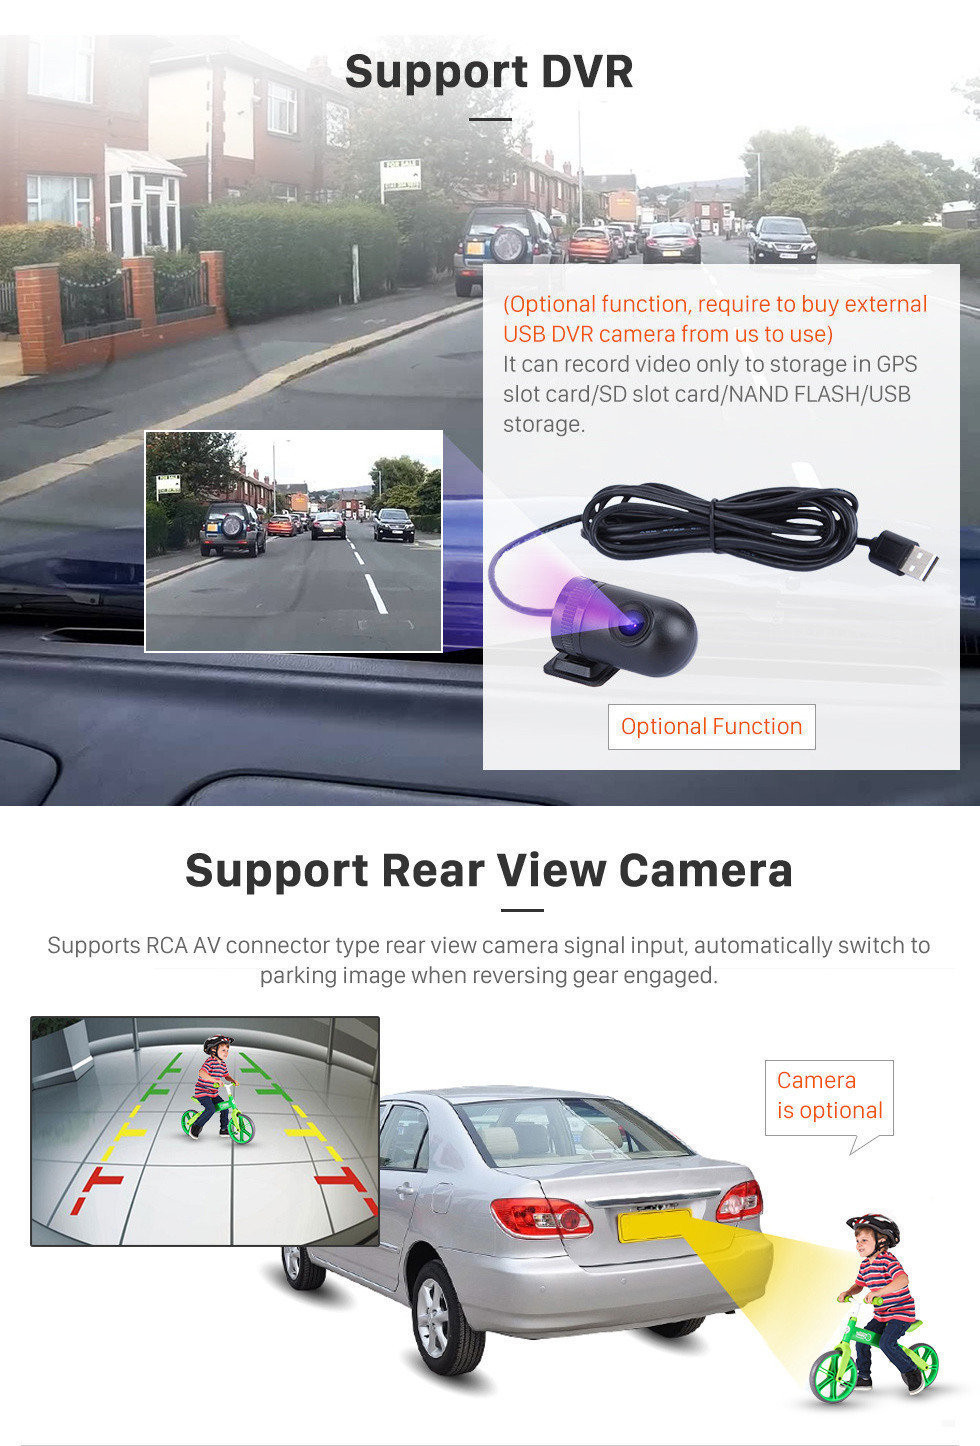 Seicane 9 pouces Android 11.0 2016 2017 2018 HYUNDAI H1 Radio Upgrade GPS Navigation Car Écran Tactile Stéréo Bluetooth Mirror Link support OBD2 AUX 3G WiFi DVR 1080P Vidéo Lecteur de DVD